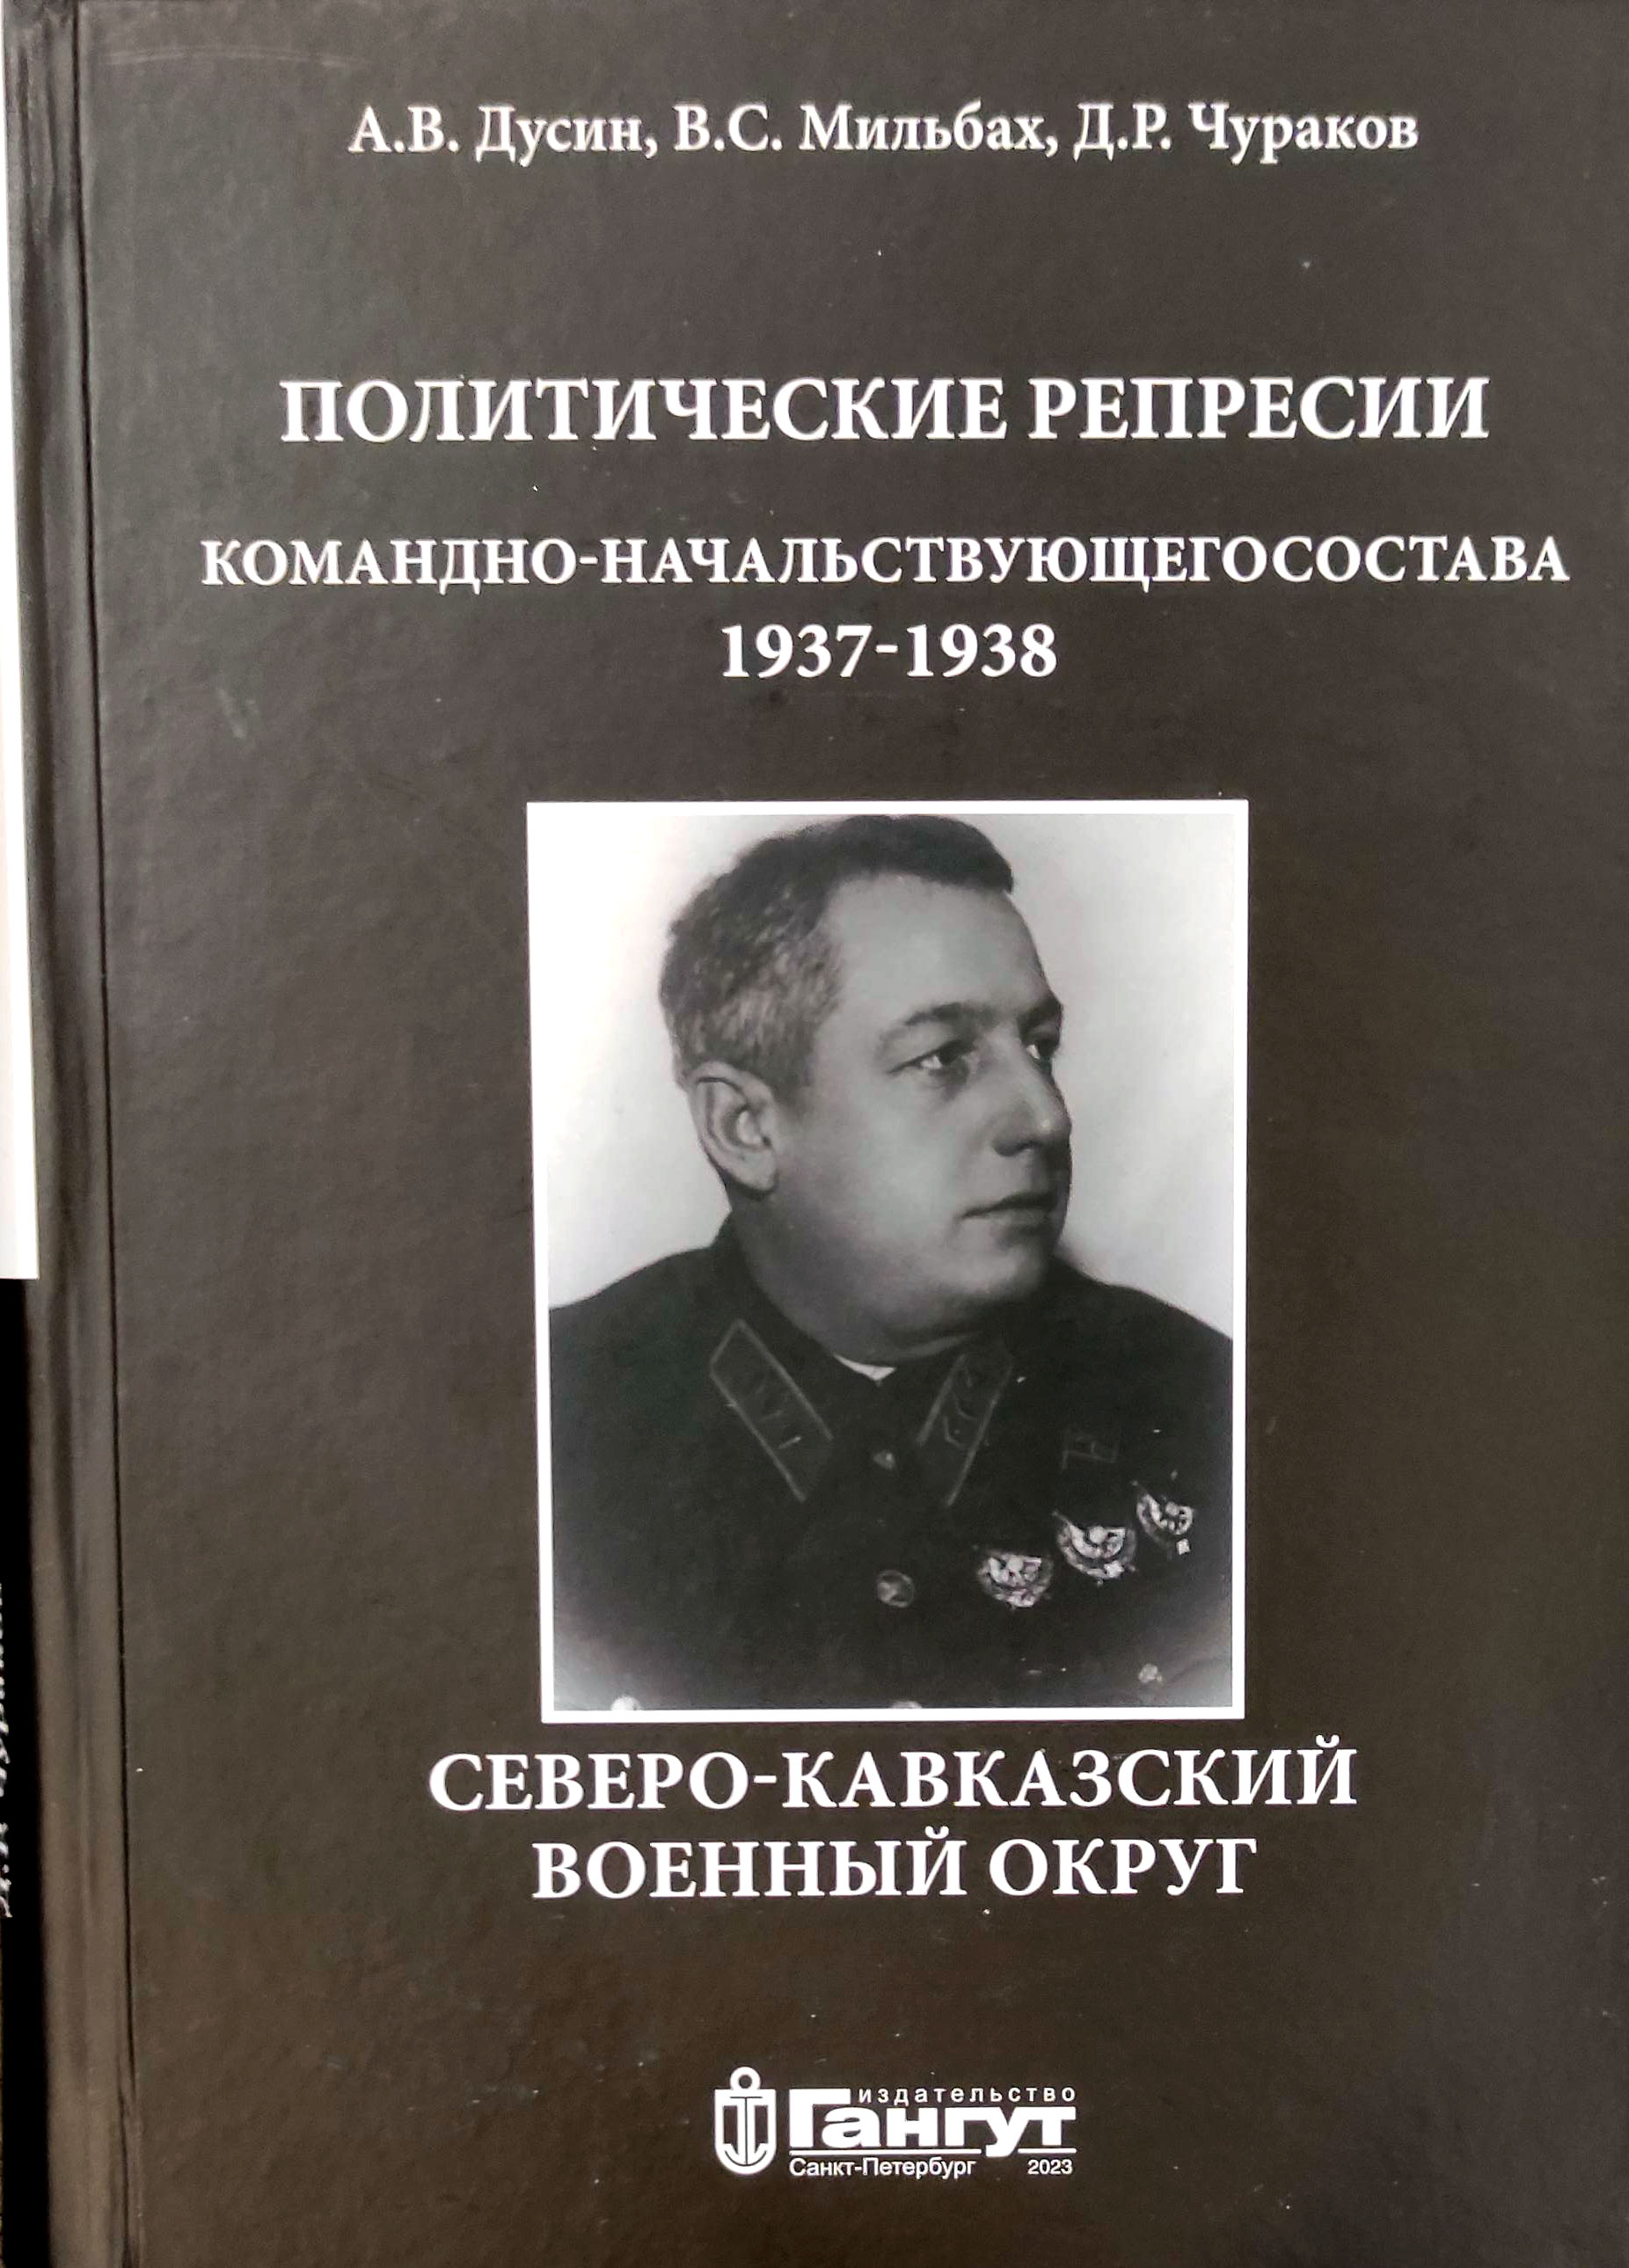 Политические репрессии командно-начальствующего состава. Северо-Кавказский военный округ, 1937-1938